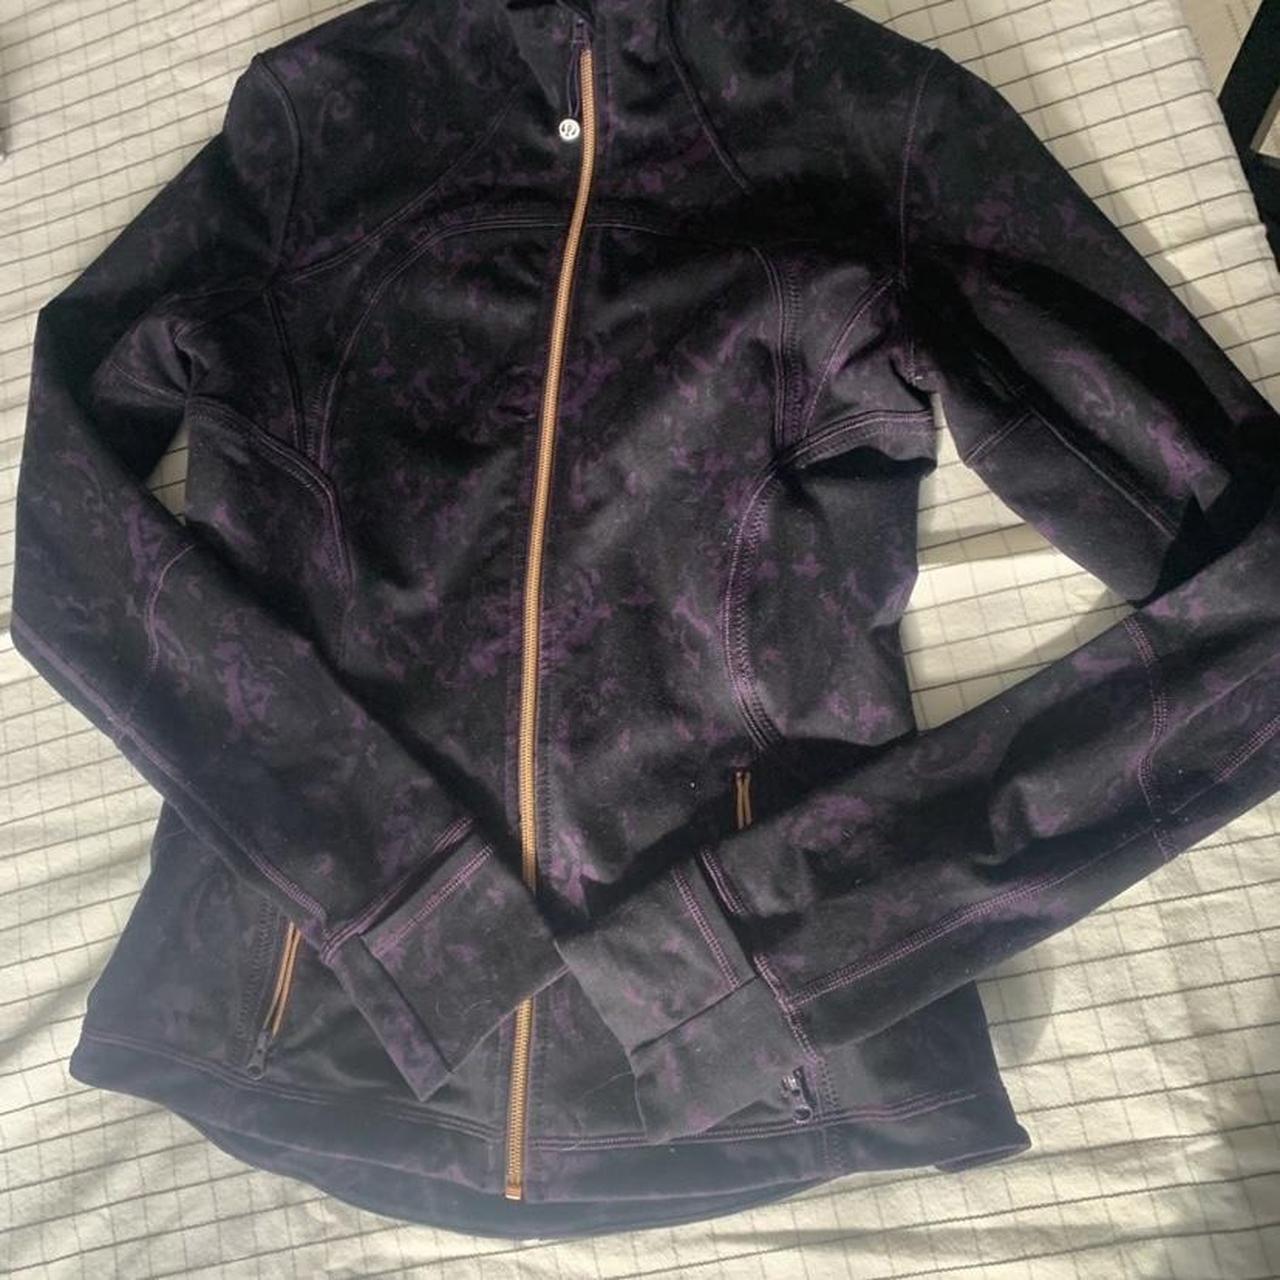 Rare purple and black align lululemon jacket - Depop